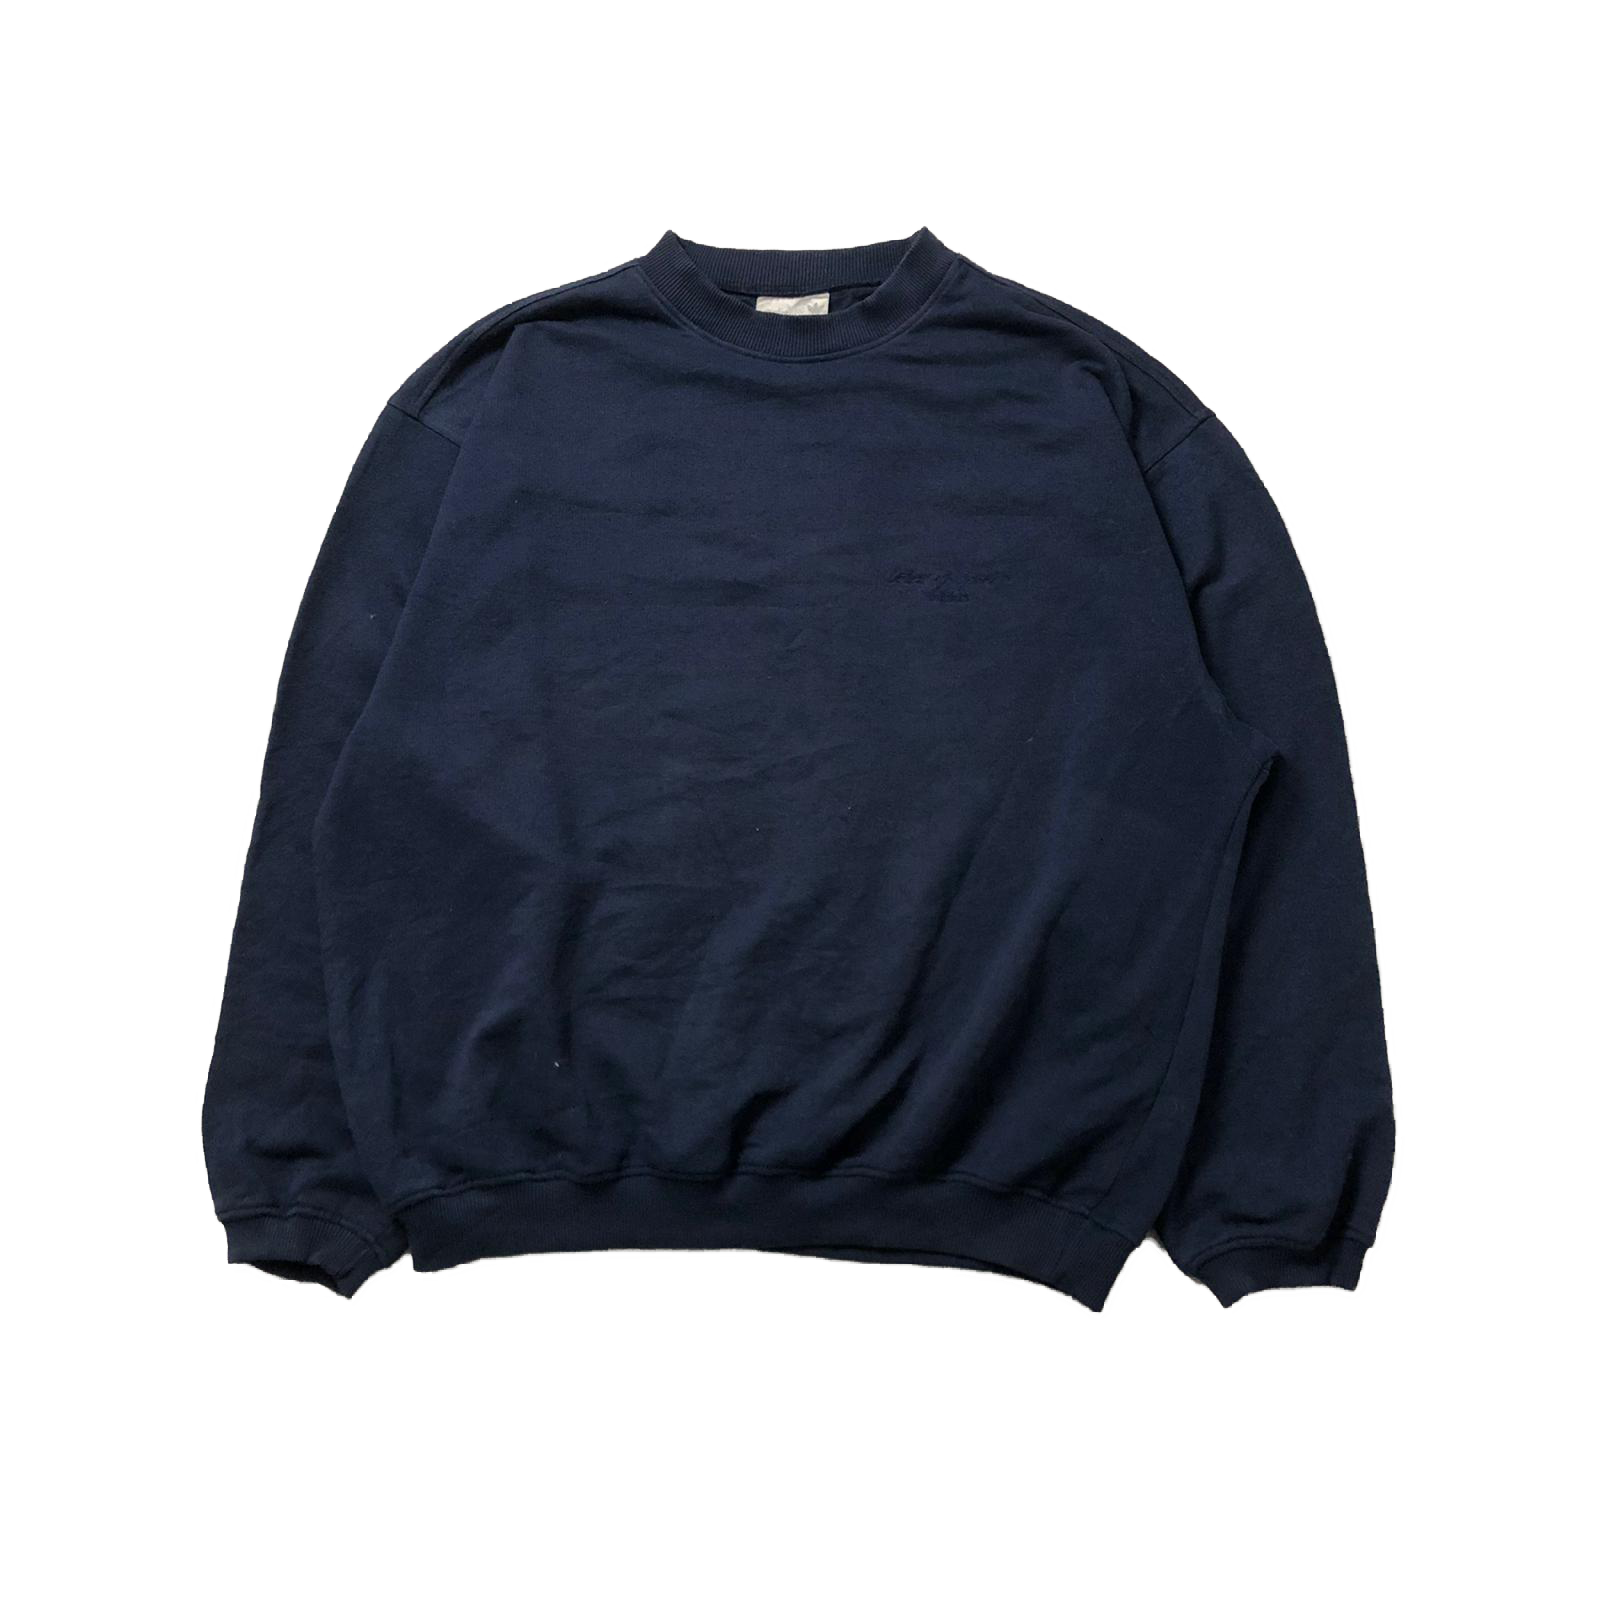 90's Adidas sweatshirt